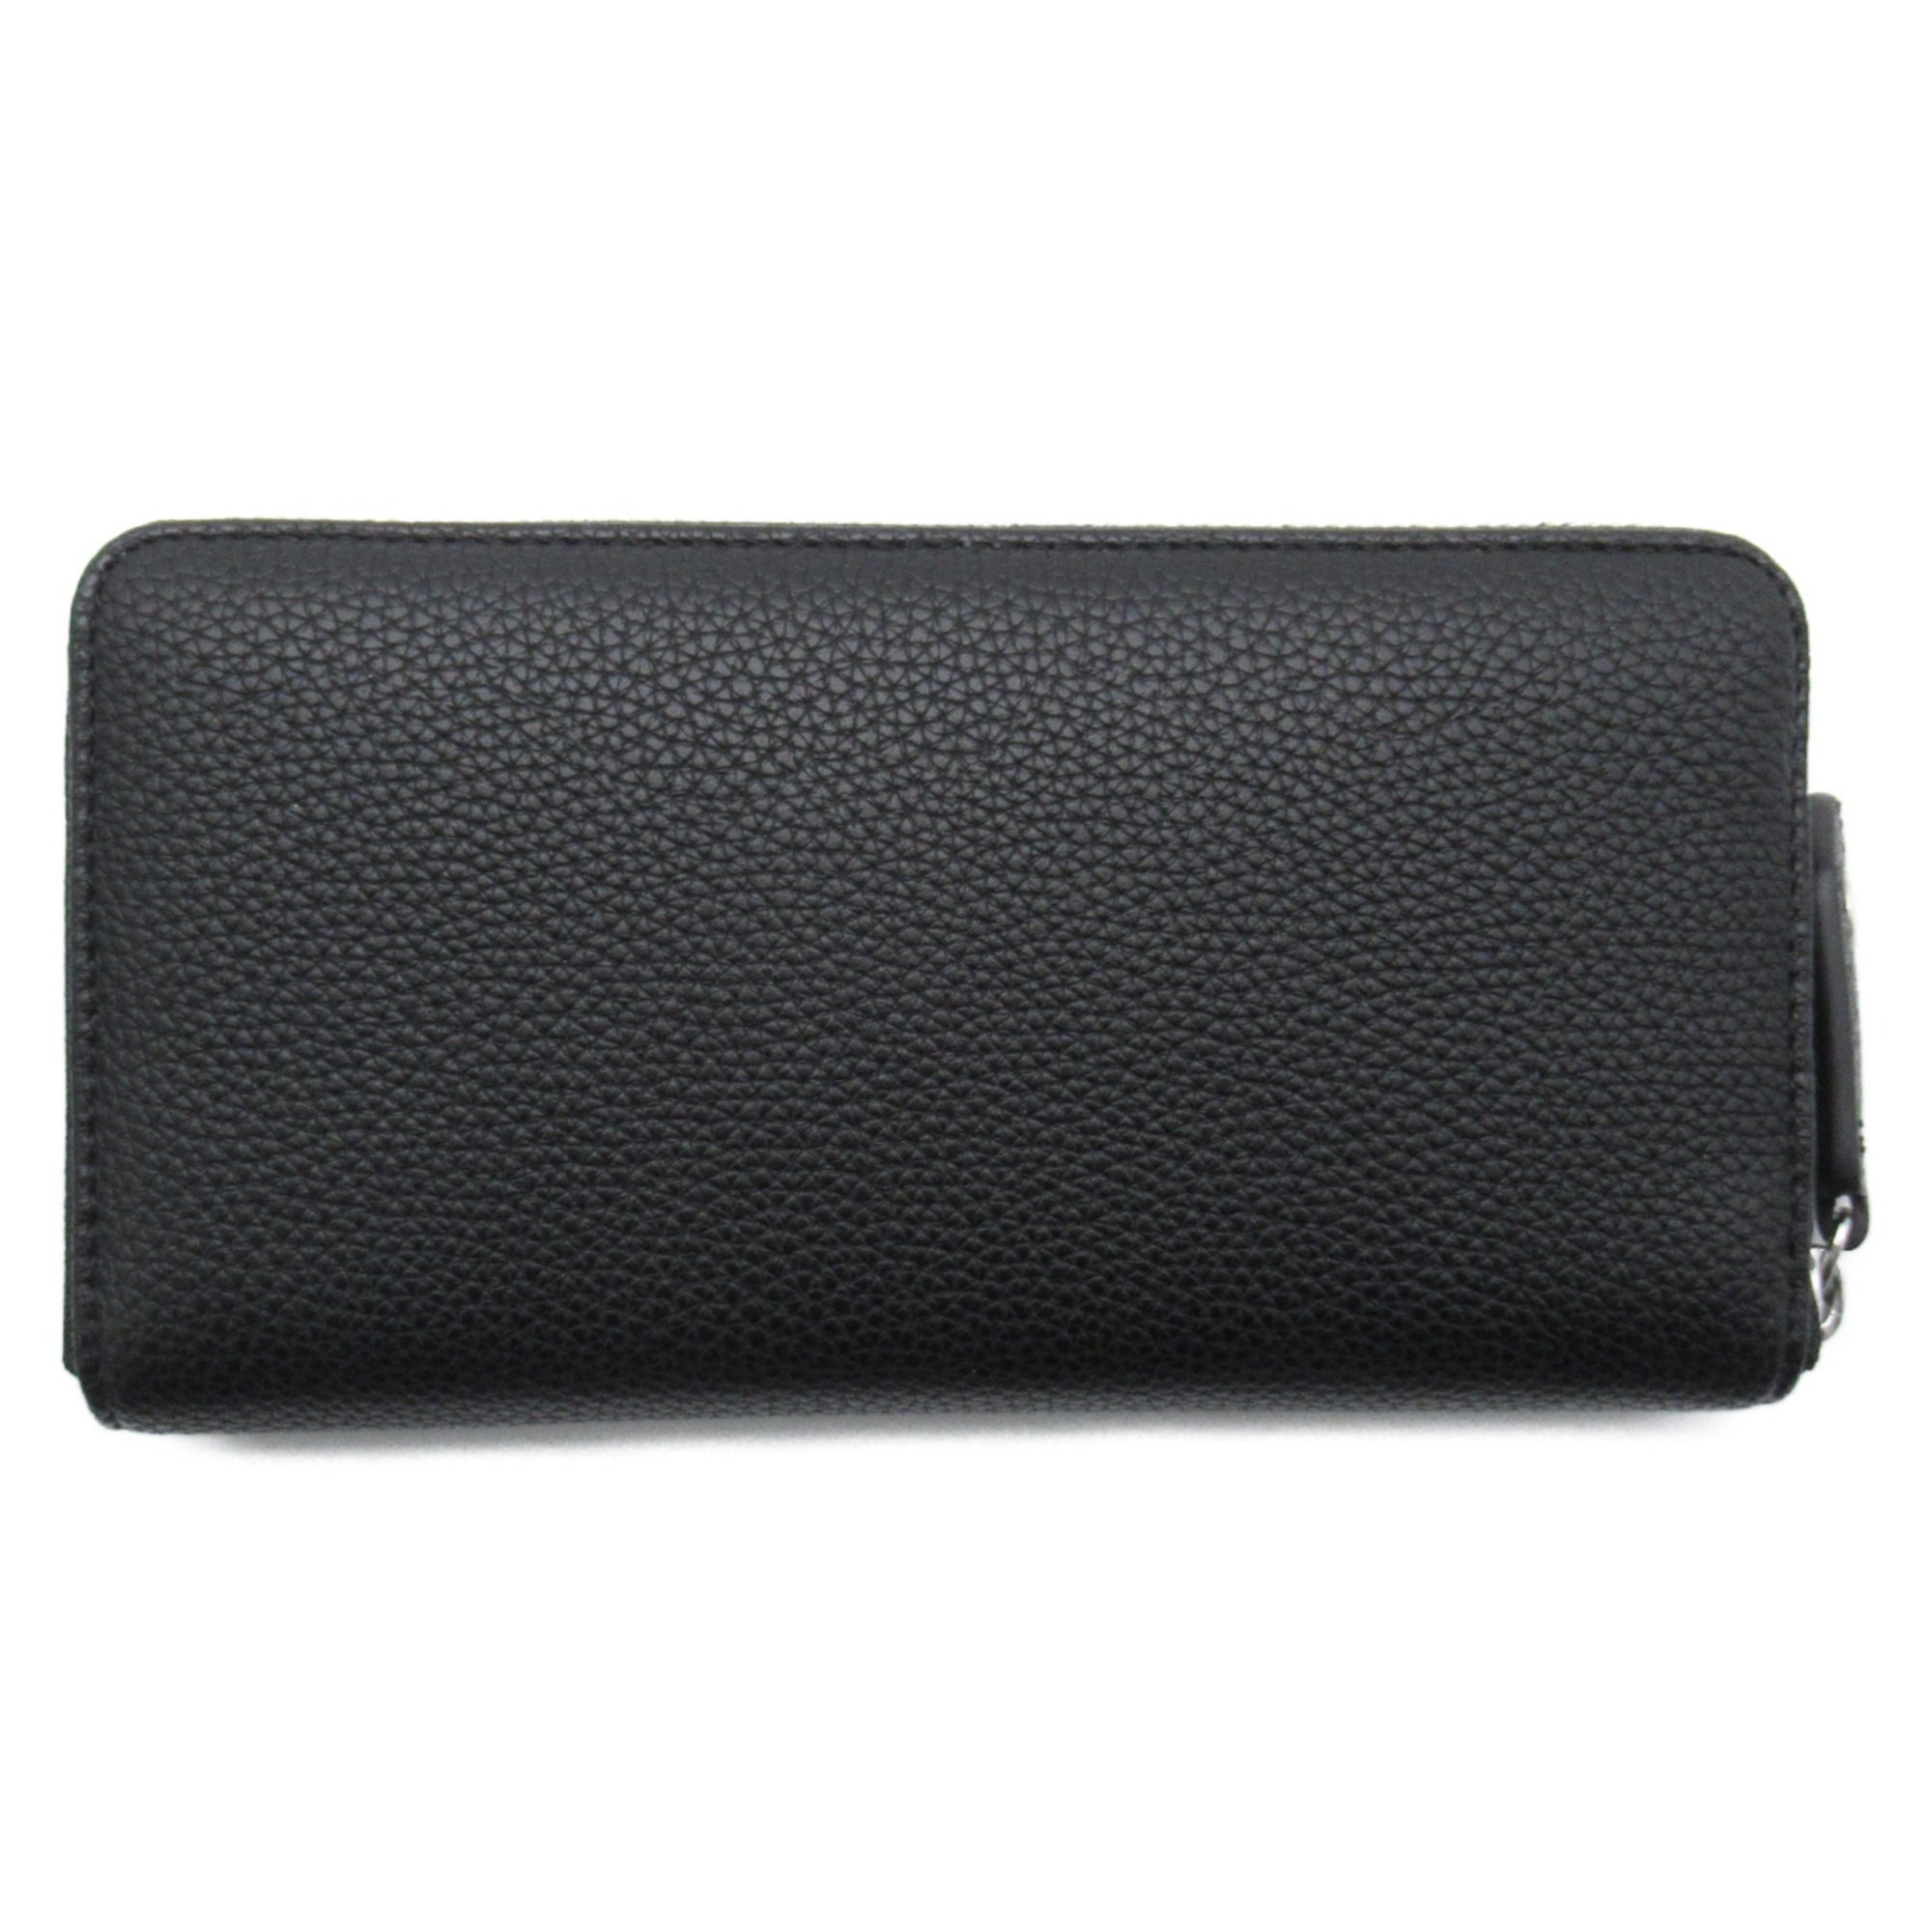 Vivienne Westwood Round Wallet 5105000102103N401 Black leather Grain leather 5105000102103N401